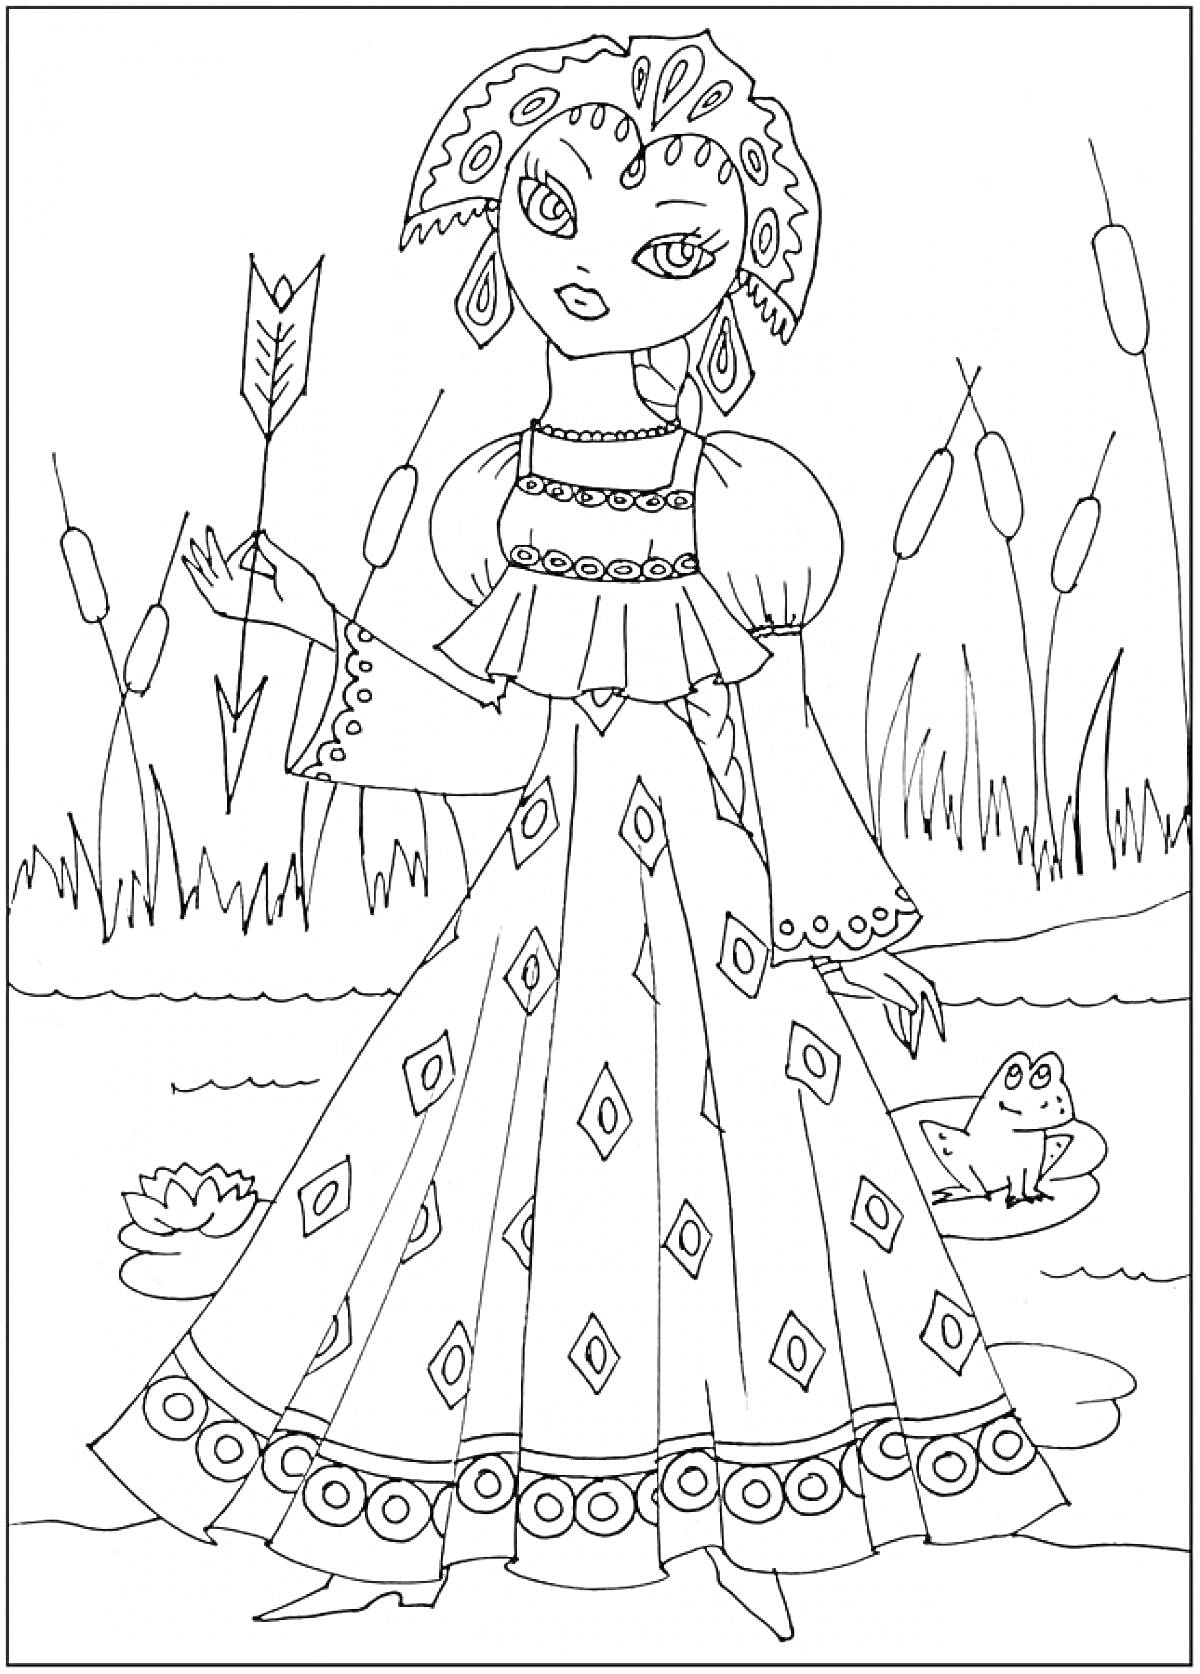 Раскраска Царевна у ручья с лягушкой и стрелой в руке